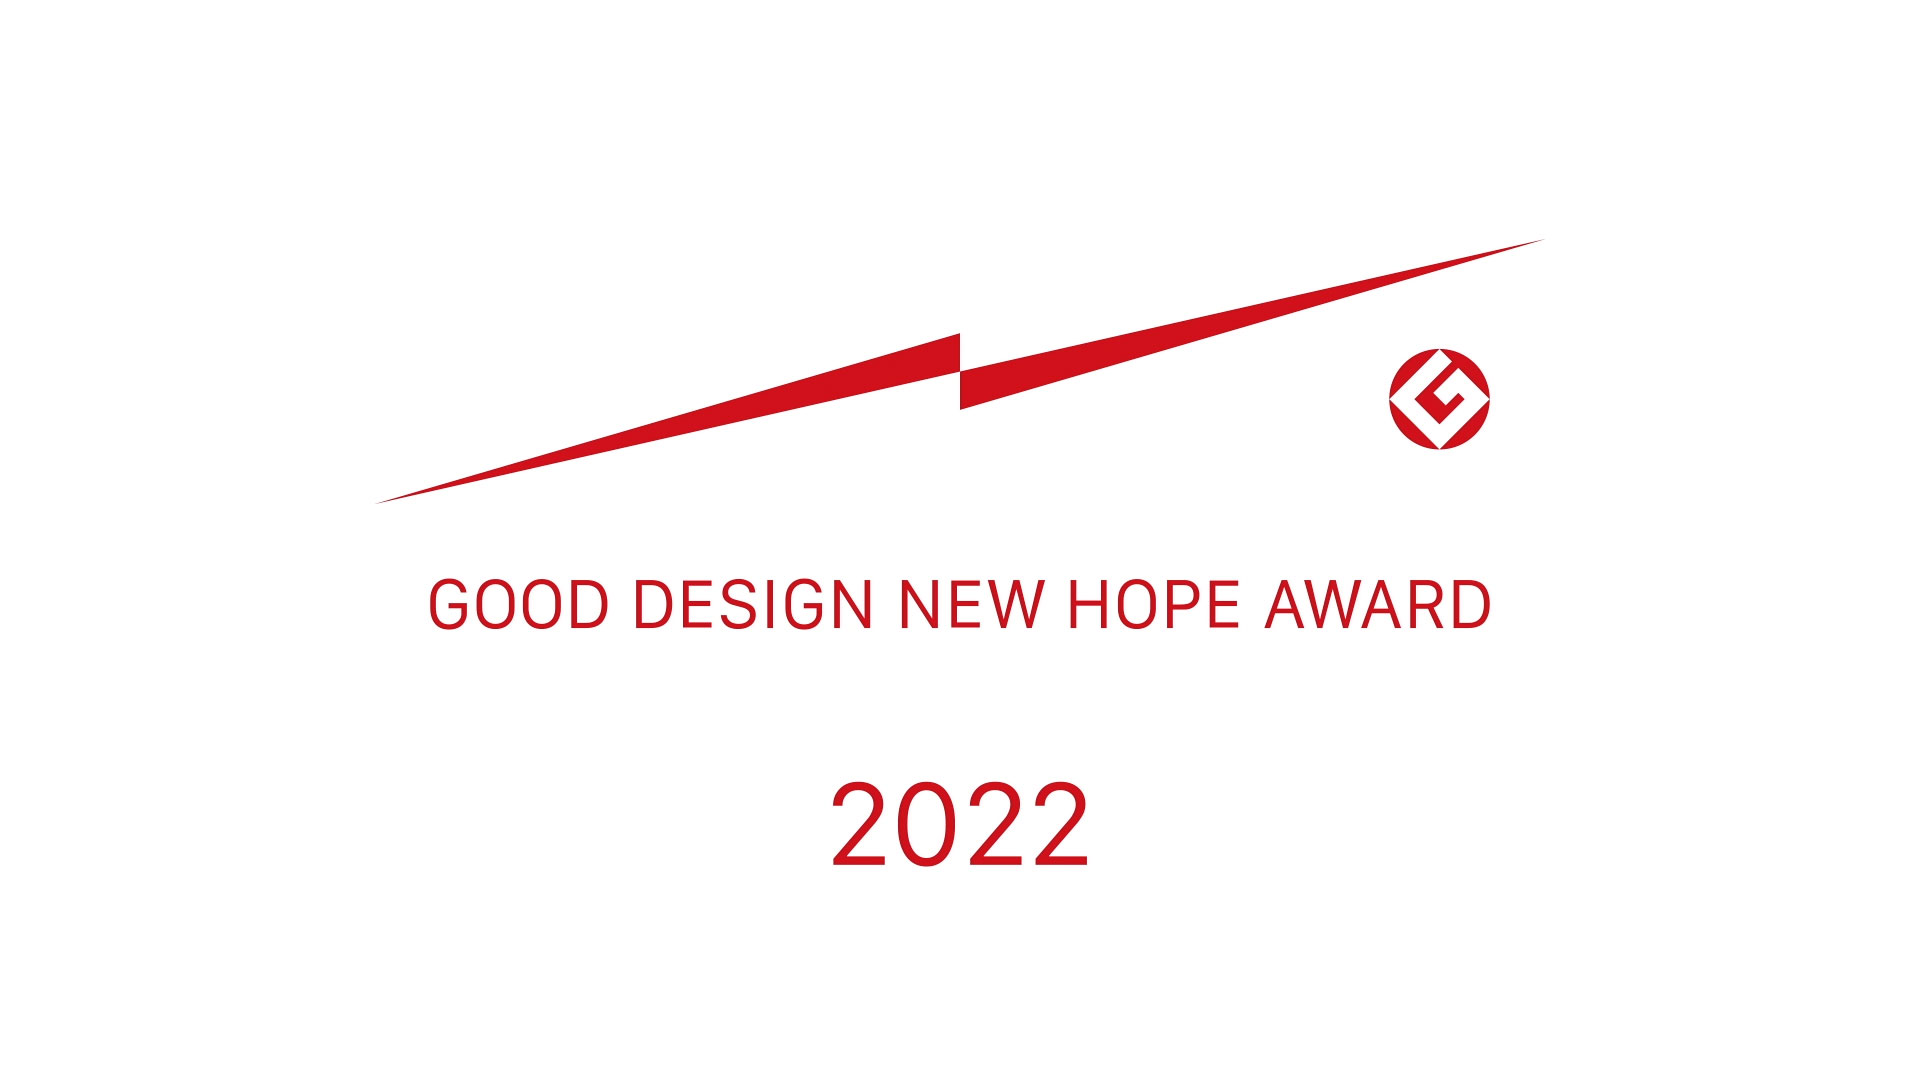 GOOD DESIGN NEW HOPE AWARD 2022 -Motion Logo-